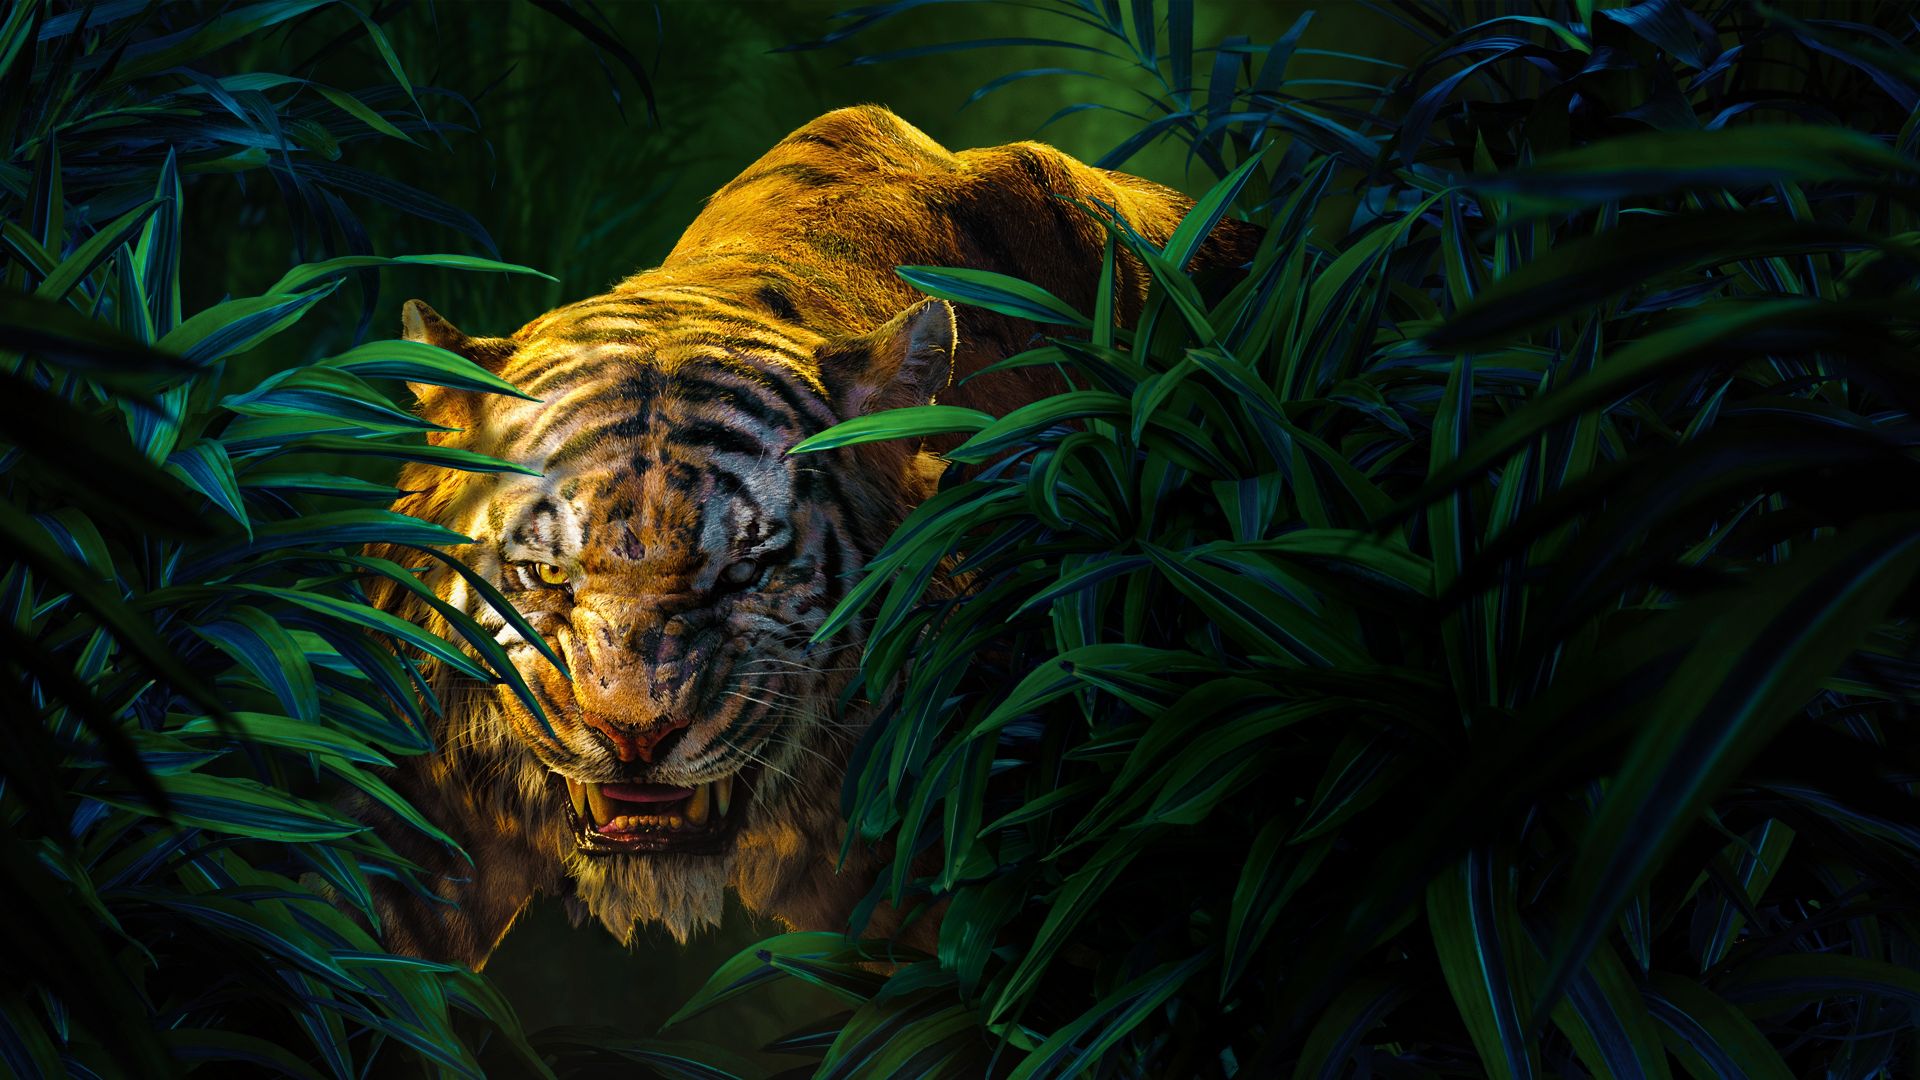 The Jungle Book (2016) Art